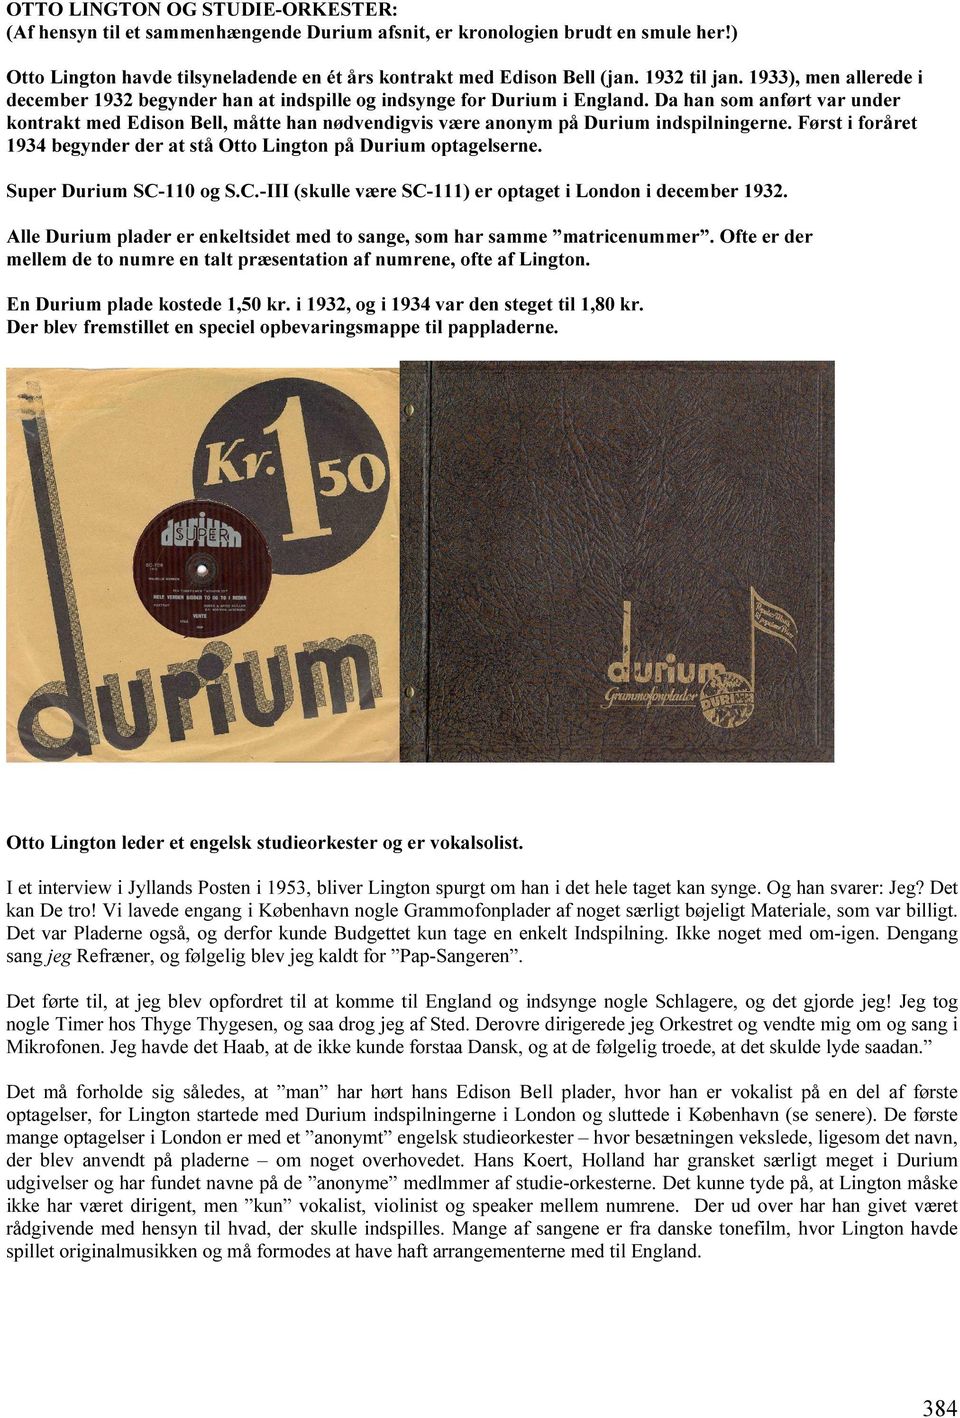 Da han som anført var under kontrakt med Edison Bell, måtte han nødvendigvis være anonym på Durium indspilningerne. Først i foråret 1934 begynder der at stå Otto Lington på Durium optagelserne.